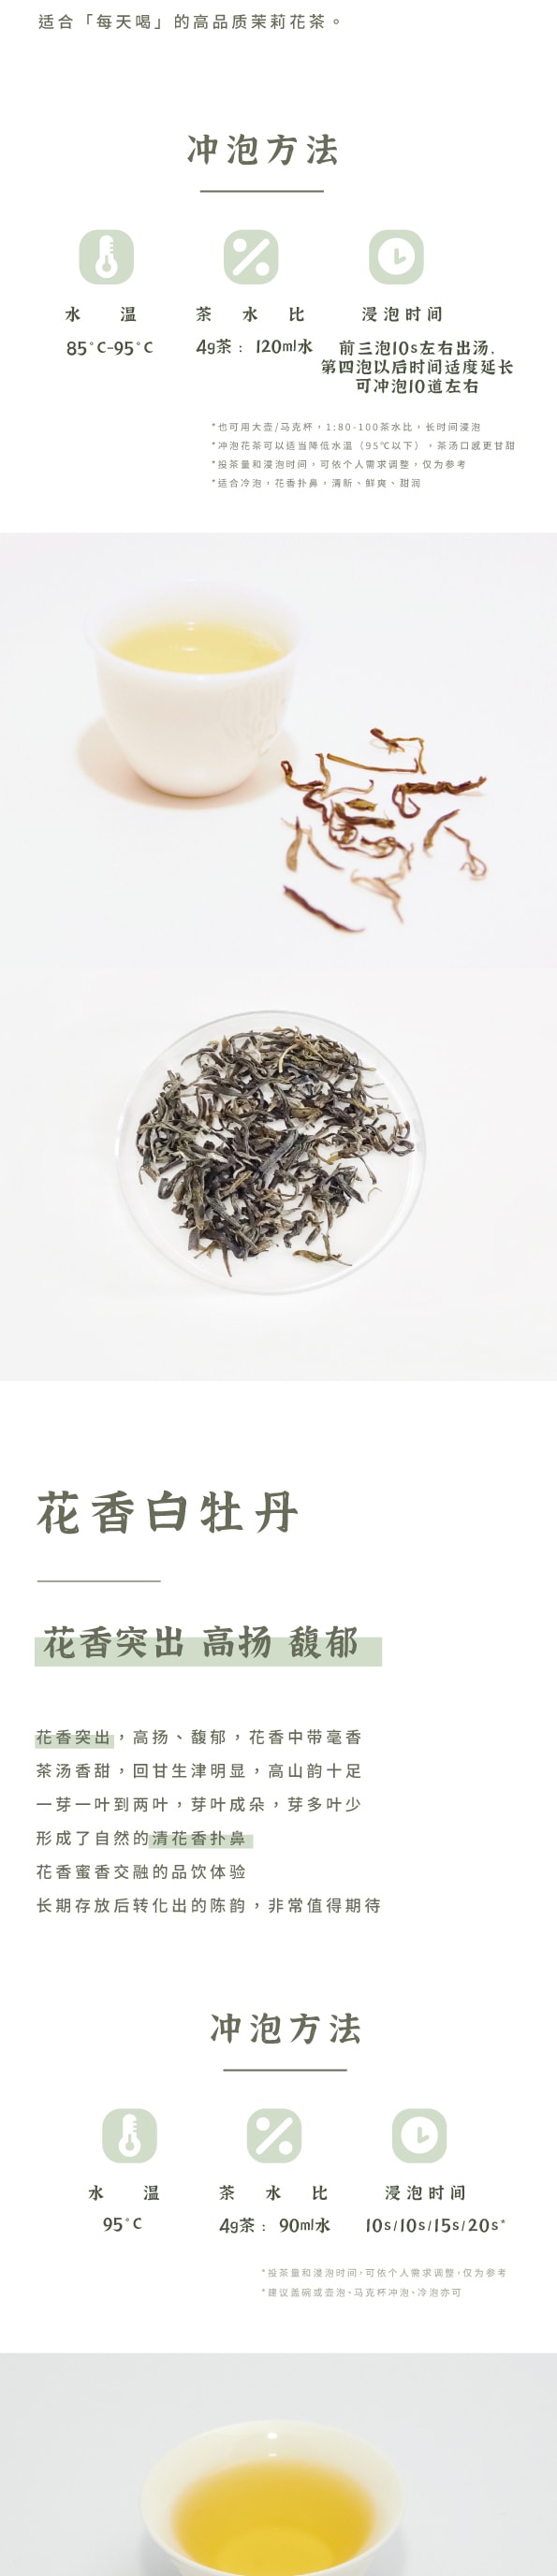 美國 趙趙的茶 ZhaoTea 新中式茶禮盒 · 千里江山 · 中國名畫 送禮/擺設/存茶/品飲 花香白牡丹40g(5gx8)